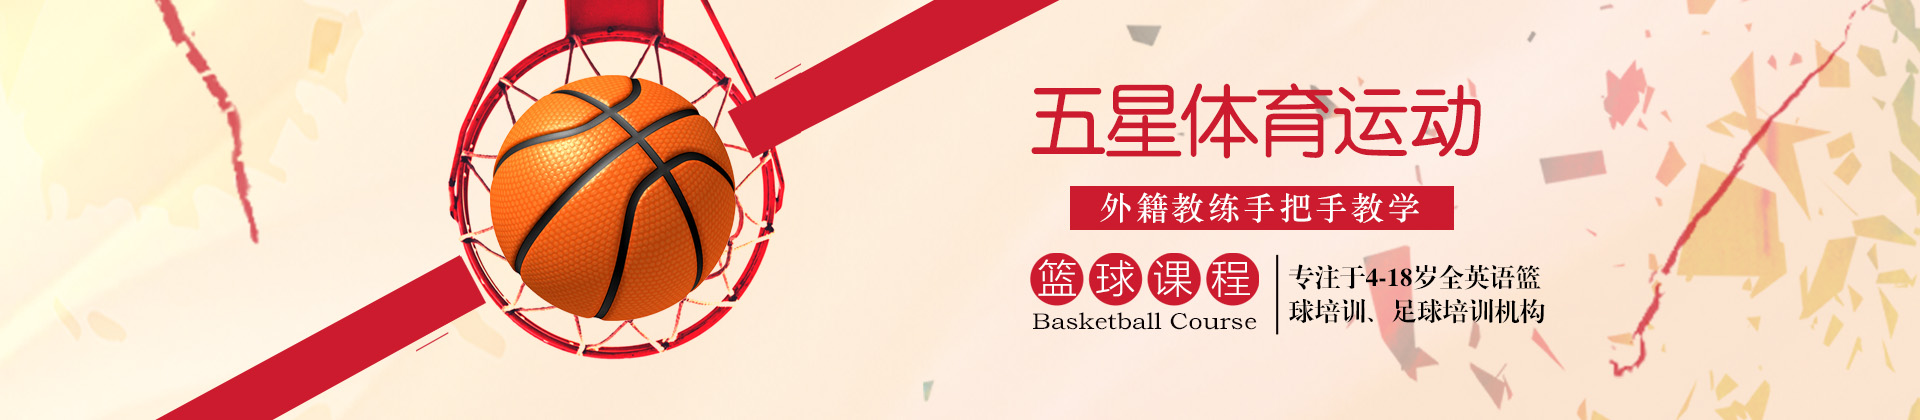 北京五星体育运动